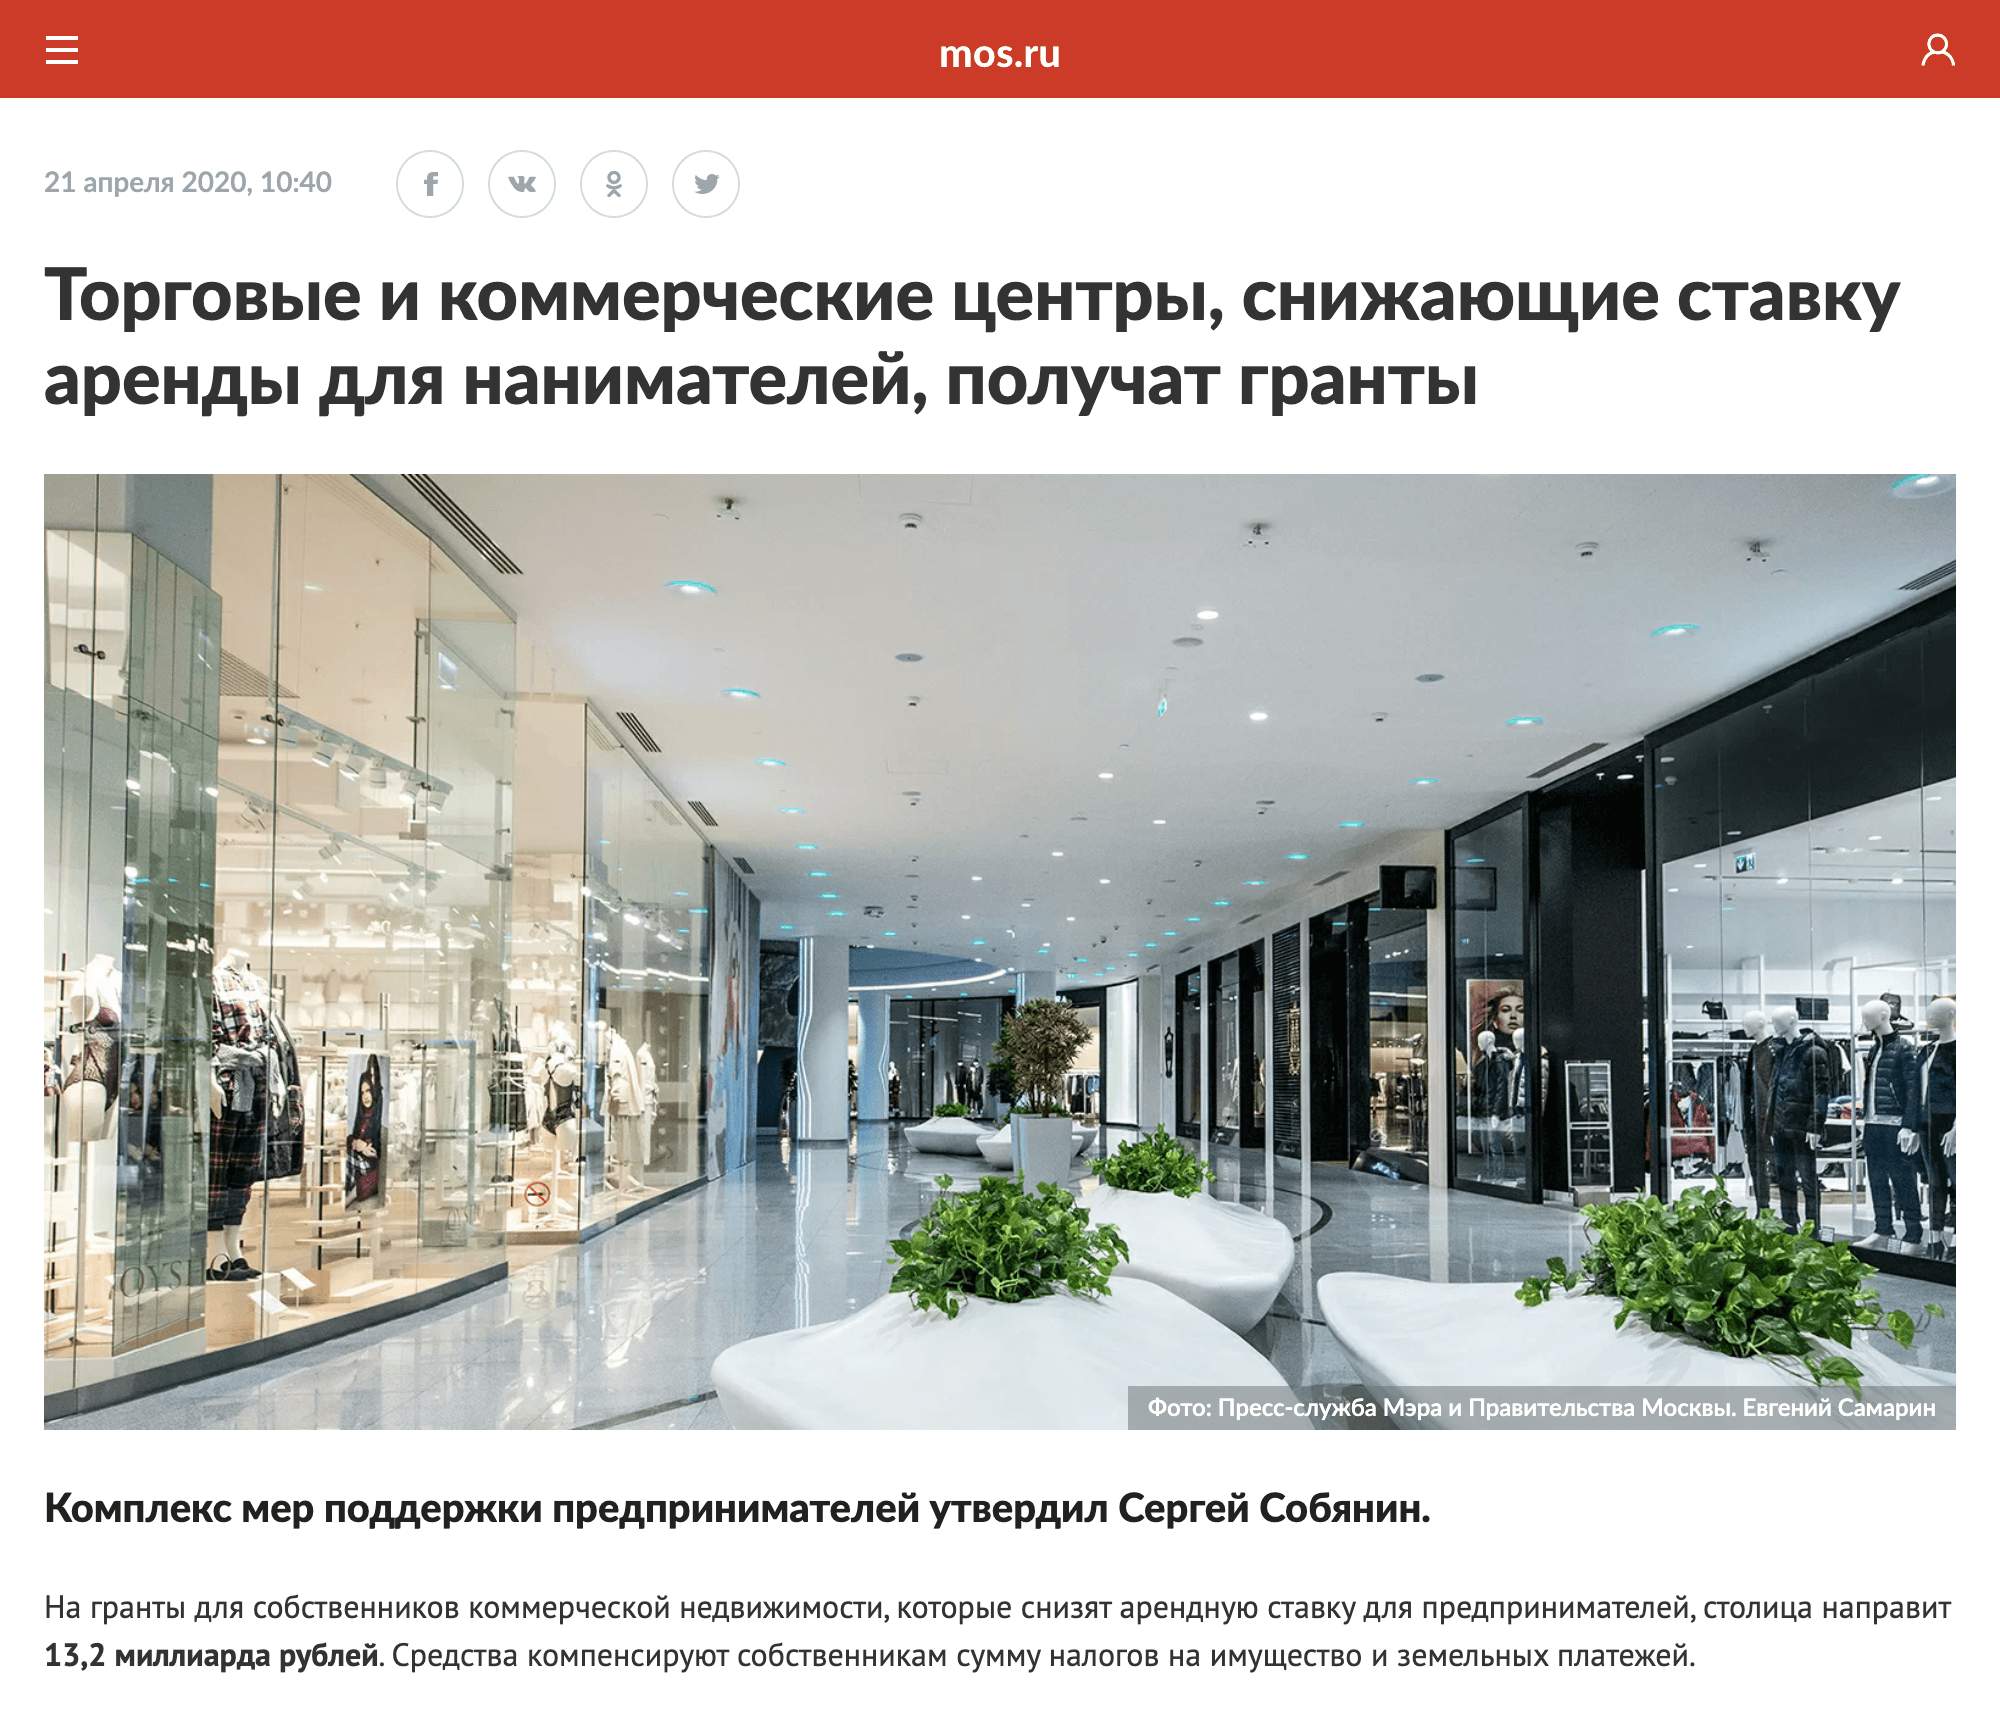 Правительство Москвы выделило 13,2 млрд рублей на поддержку тех арендодателей, которые снизят платежи для пострадавших от пандемии арендаторов